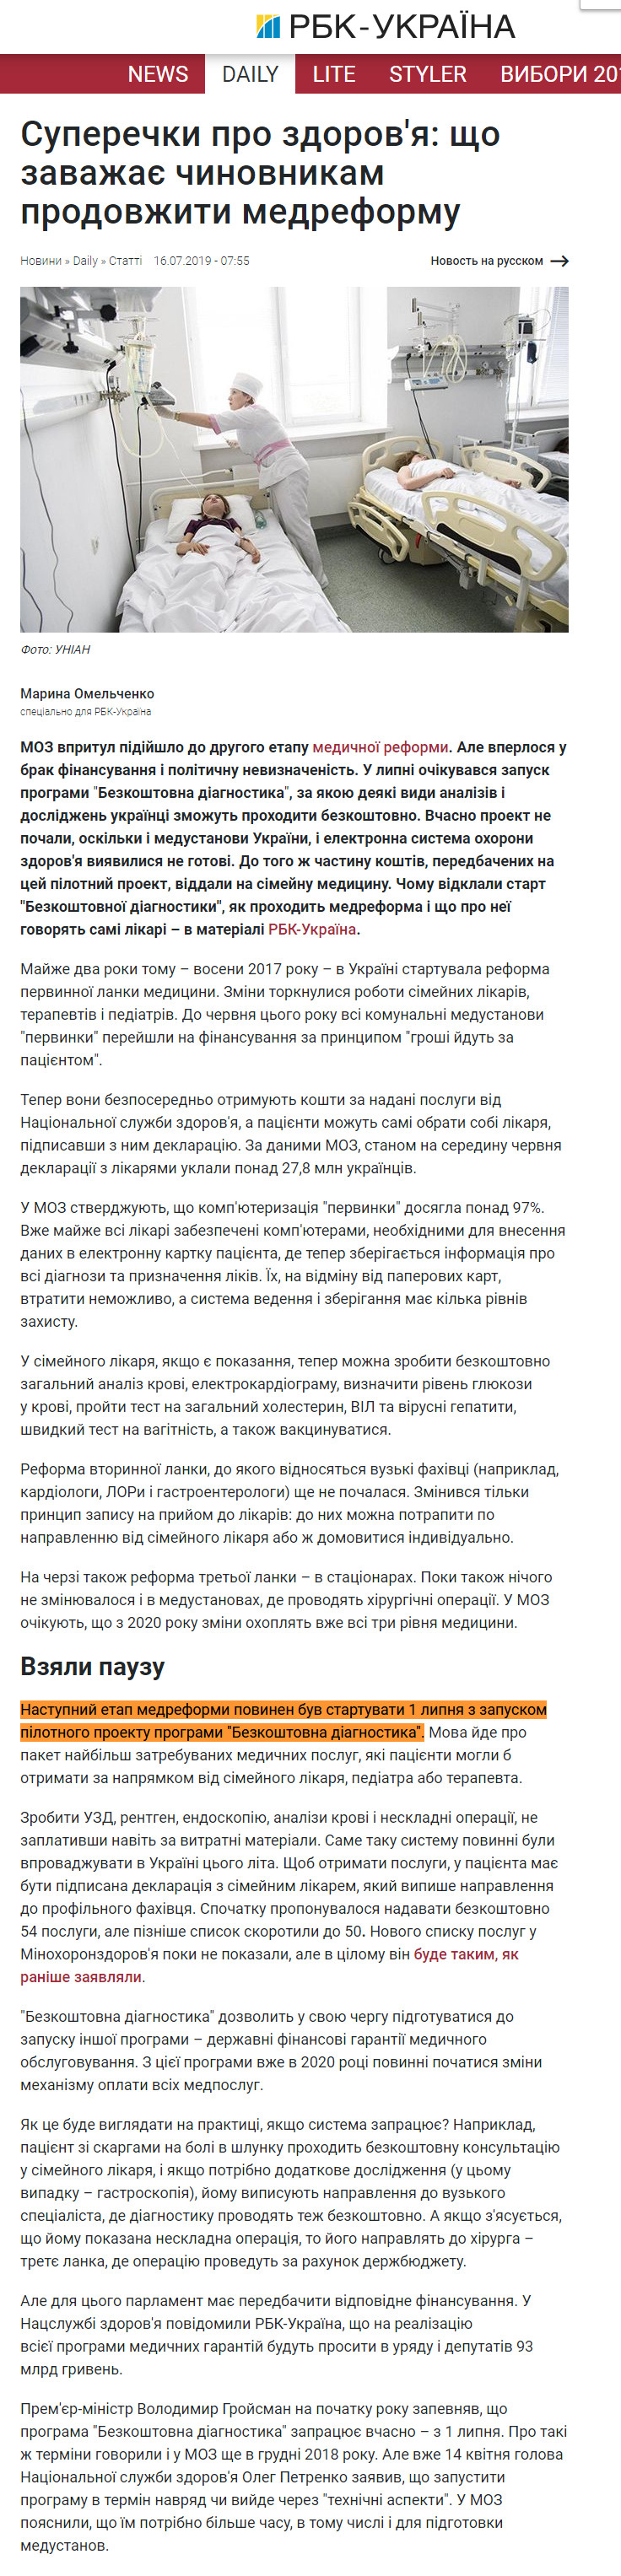 https://daily.rbc.ua/ukr/show/spory-zdorove-meshaet-chinovnikam-prodolzhit-1563199430.html